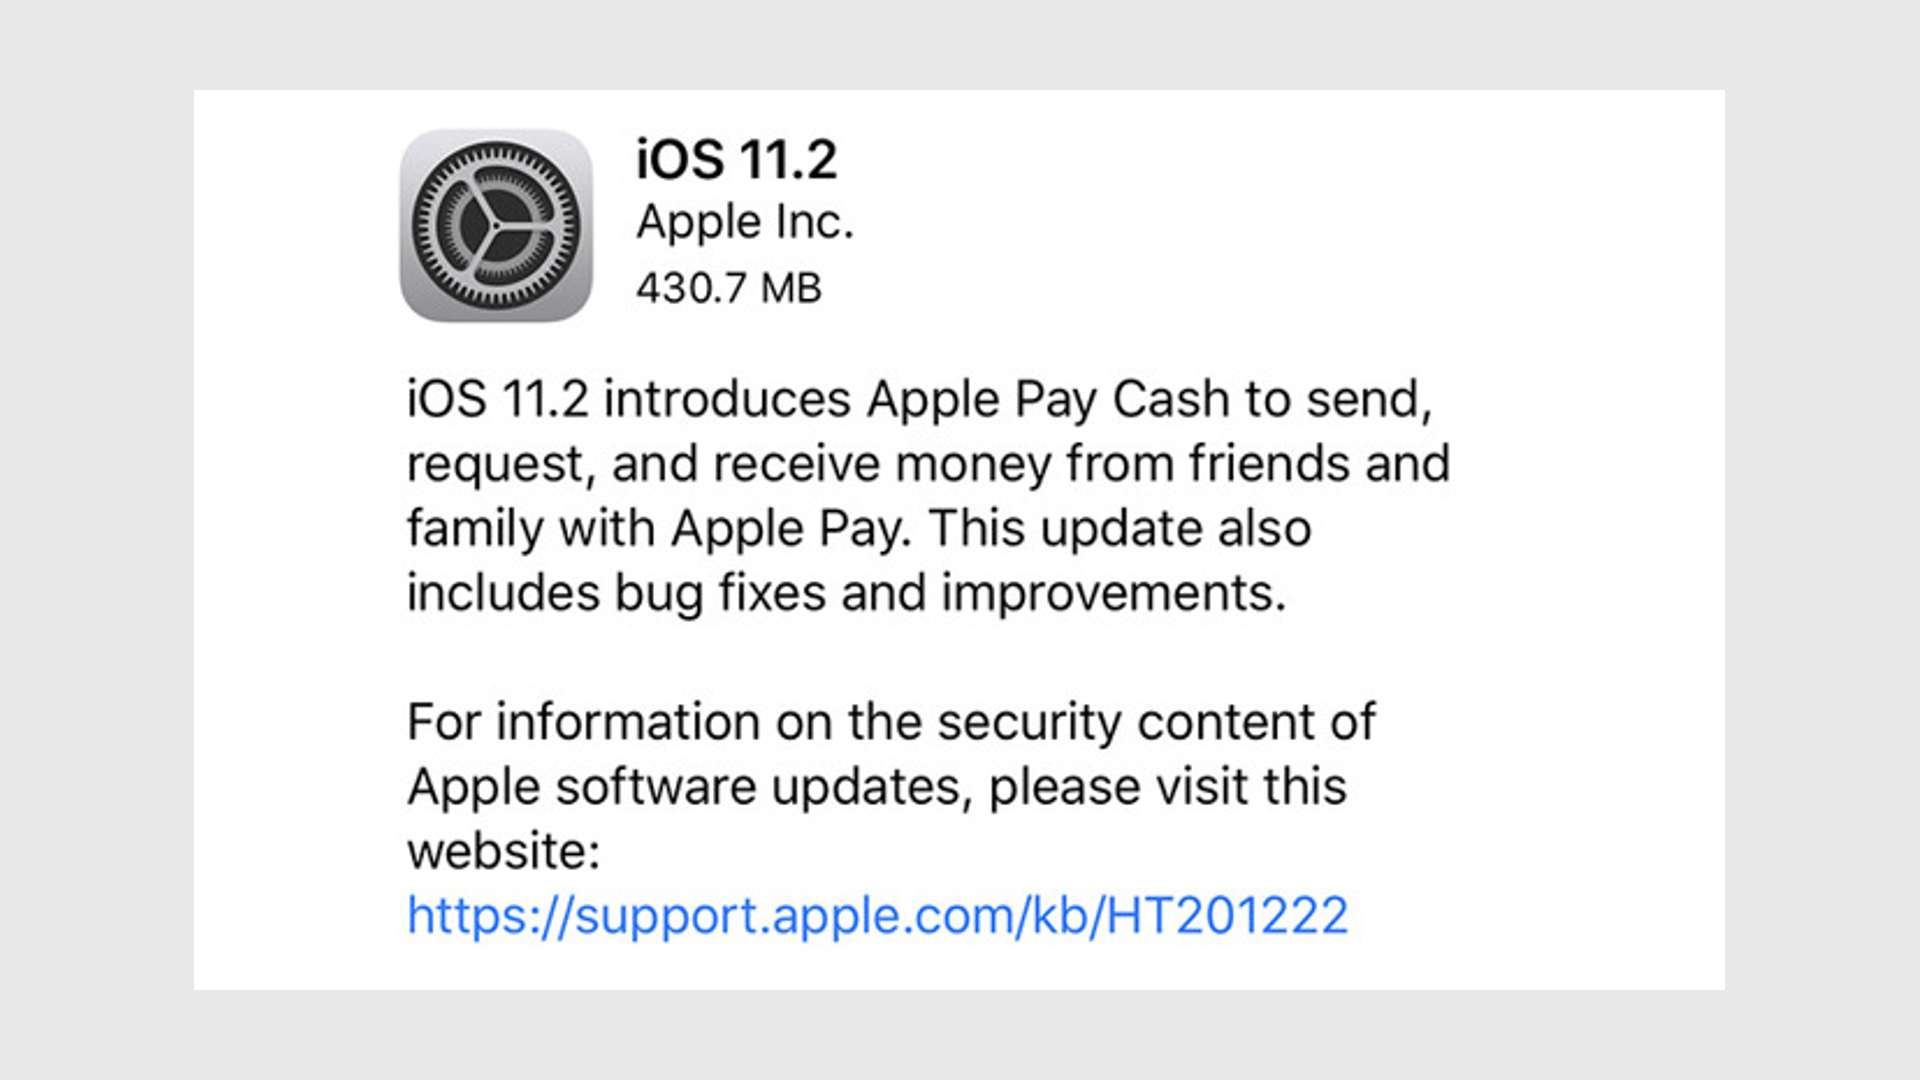 Apple iOS 11.2 Update